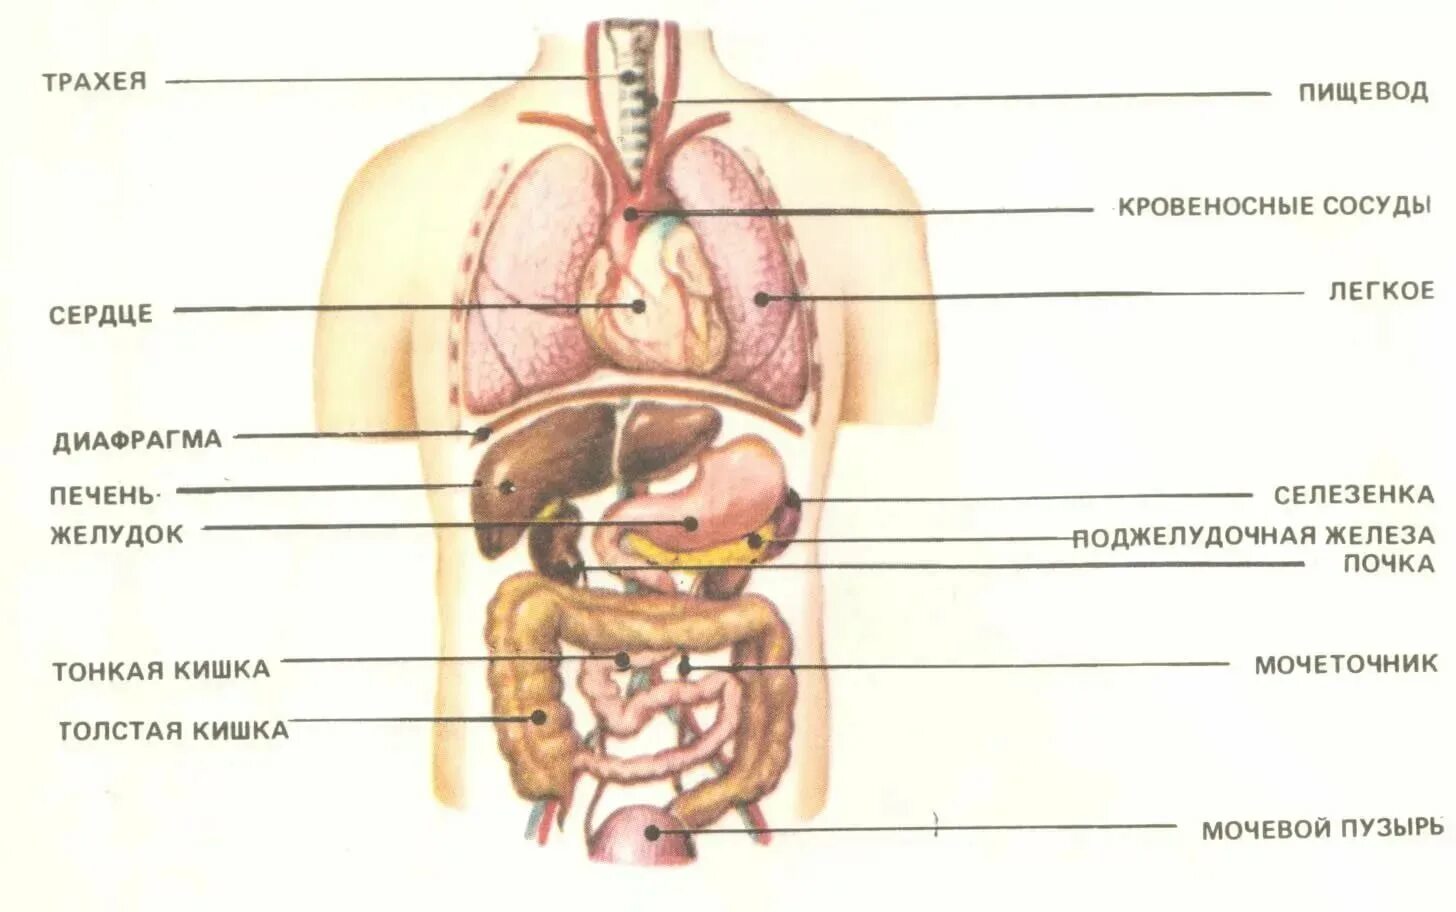 Анатомия человека с описанием органов